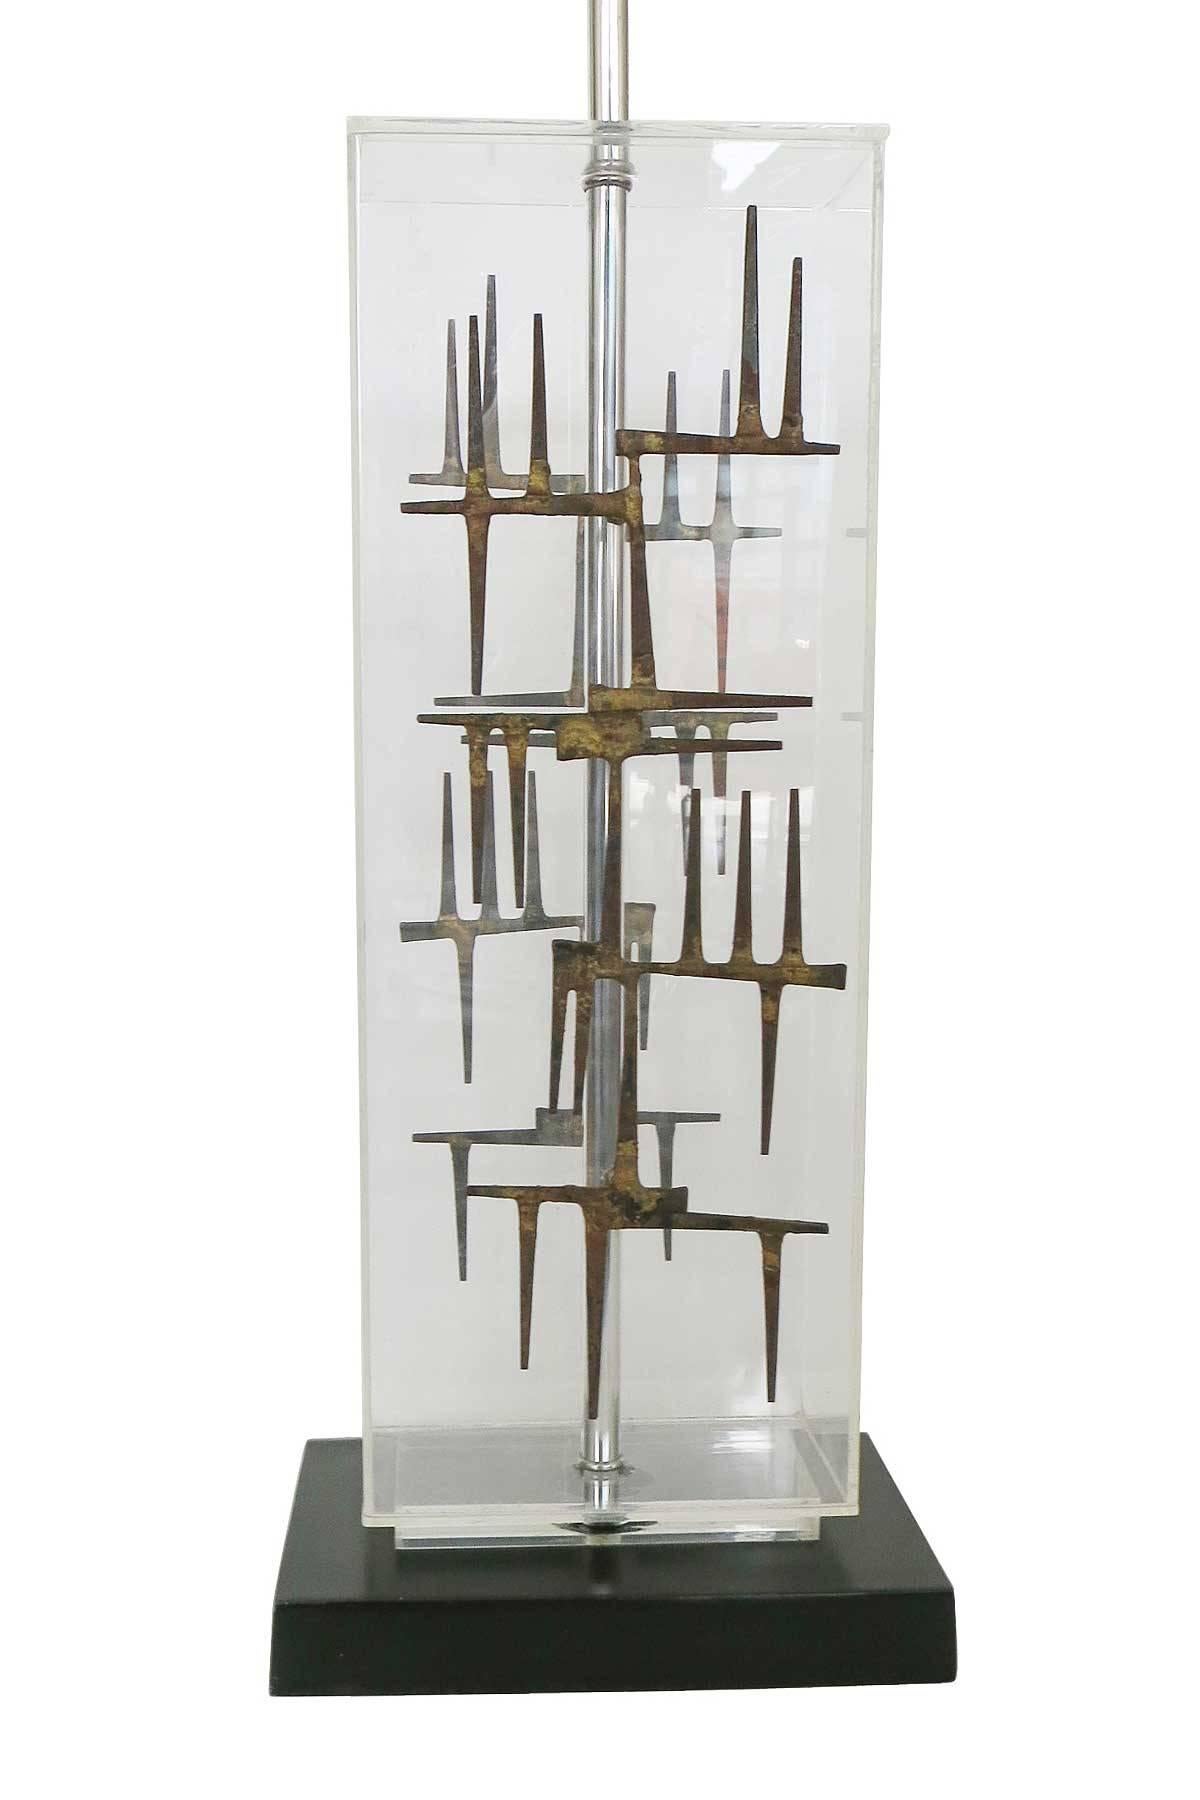 Lampe de table en Lucite, sculpture de clous brutale, circa 1967, fabriquée par Laurel Lamp Co.

Cette lampe présente une sculpture de clous soudés à la main, fixée à une base de lampe en acrylique laqué noir.